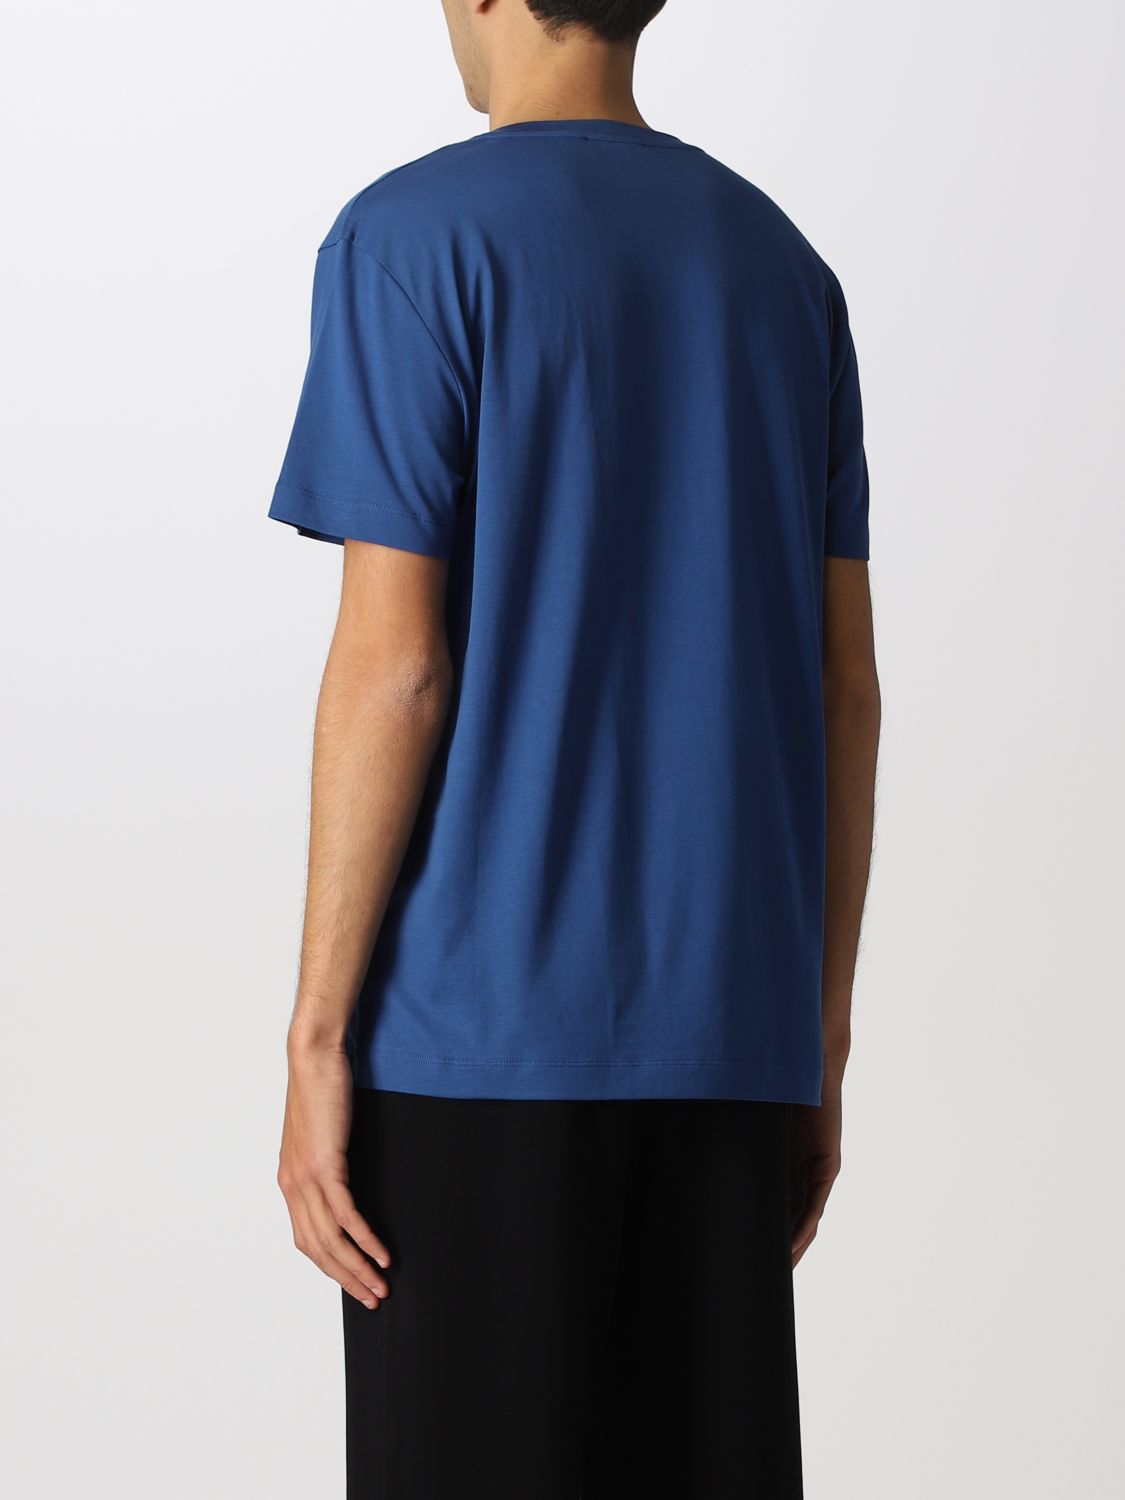 Camiseta Roberto Collina: Camiseta hombre Roberto Collina azul oscuro 2